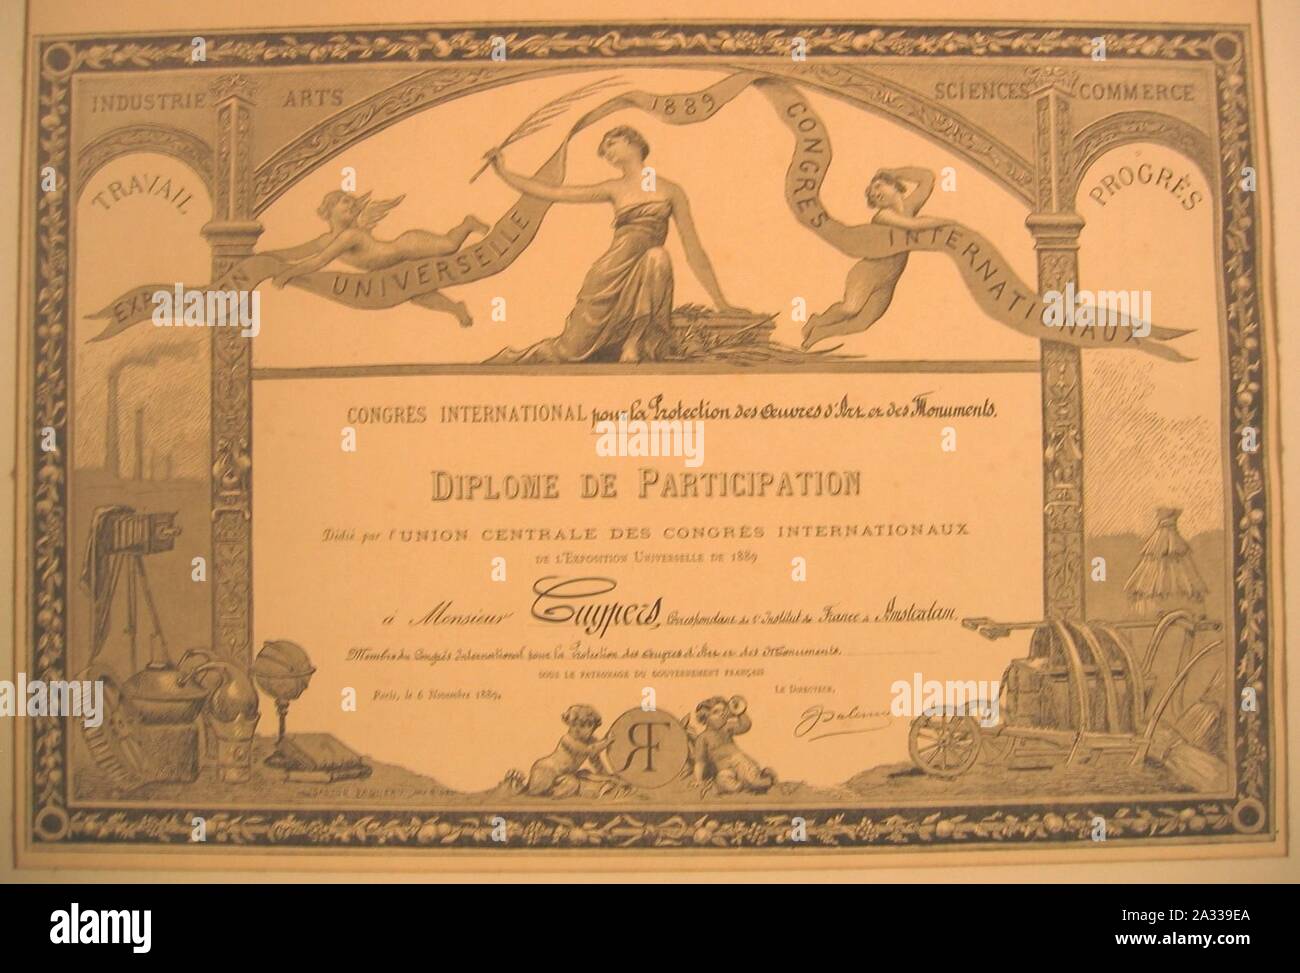 Exposition Universelle 1889 Congrès Internationaux - Diplôme de participation dédié à Monsieur Cuypers Cuypershuis 0505. Stockfoto